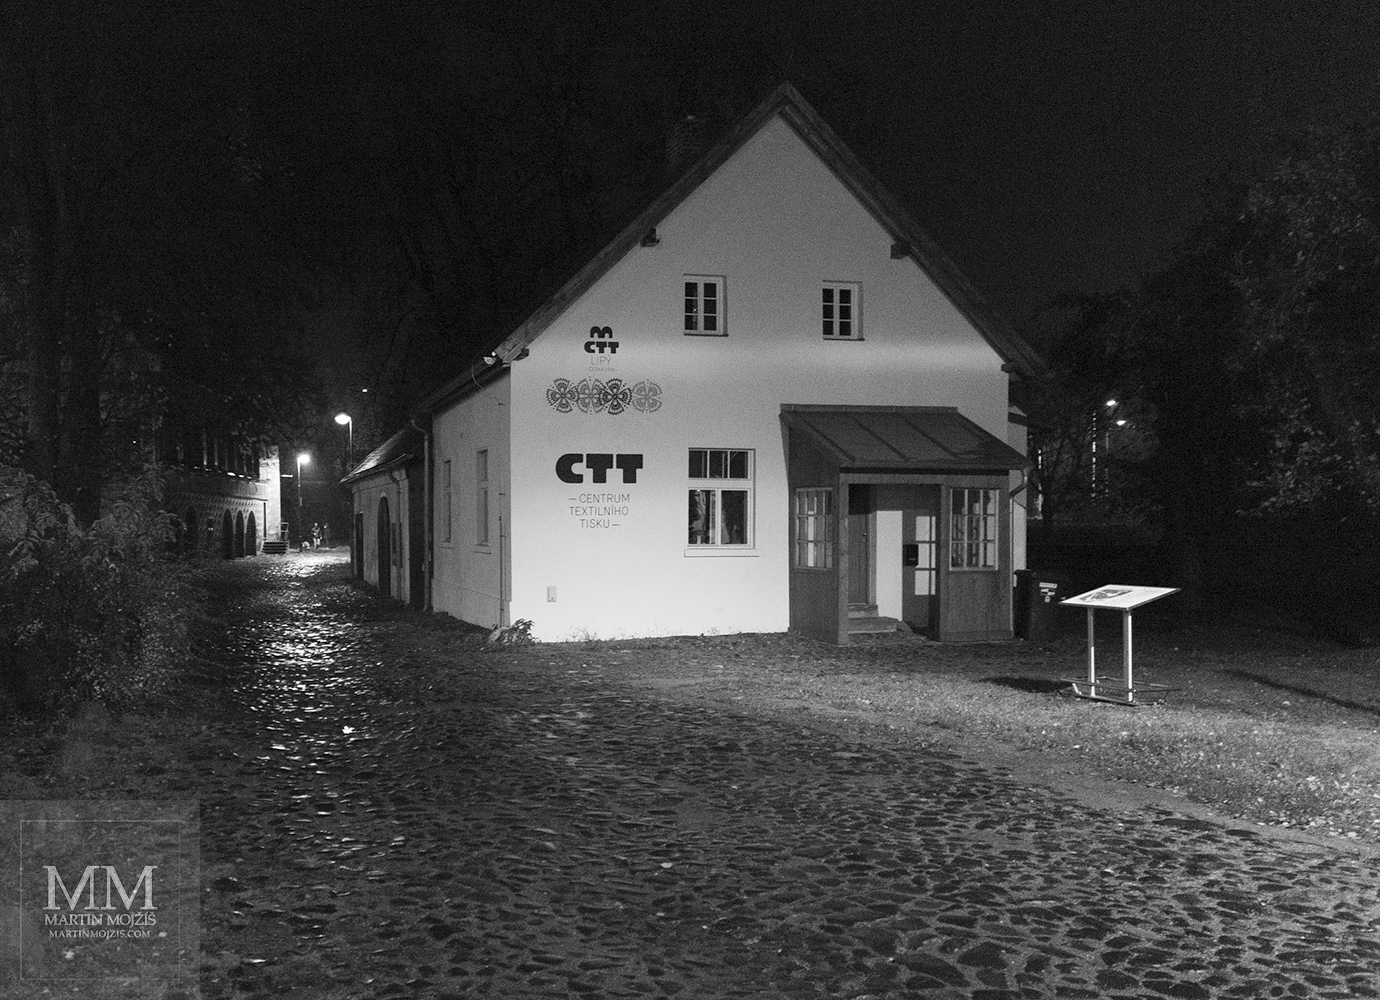 Centrum textilního tisku. Česká Lípa v noci.